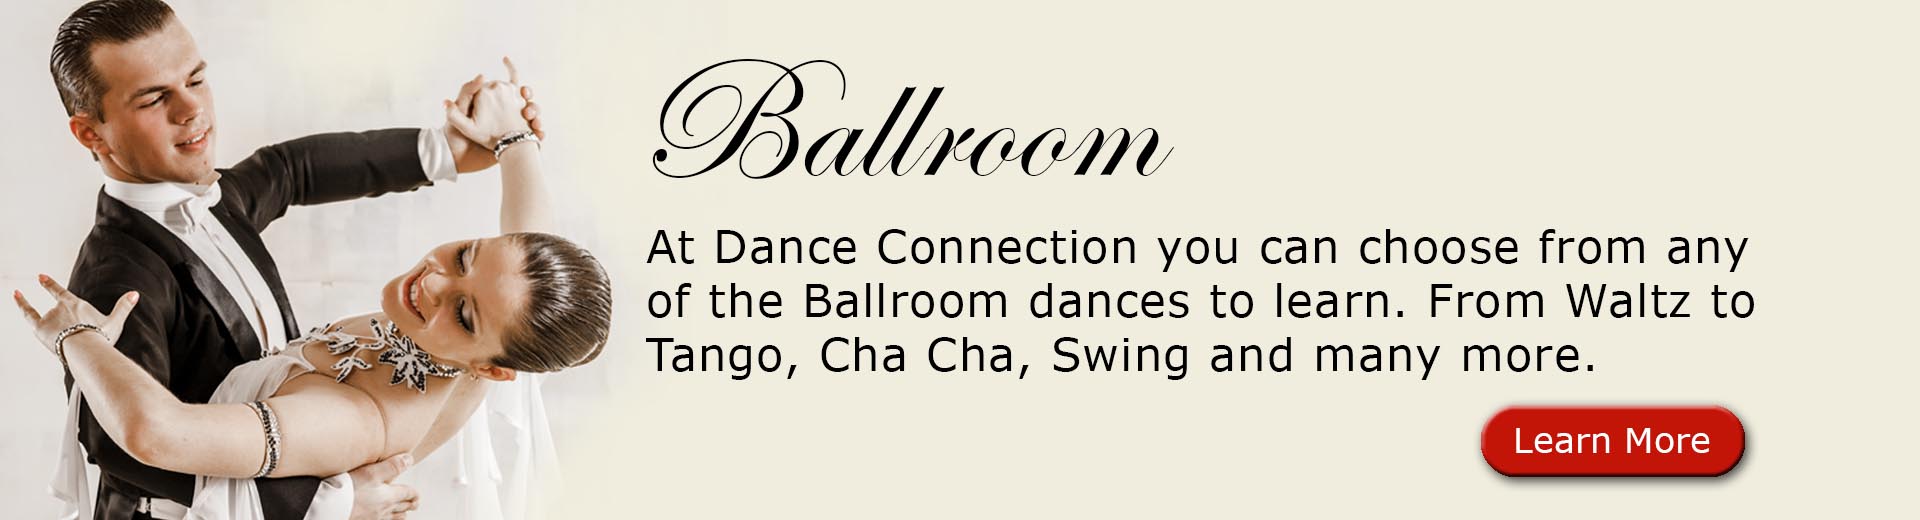 Ballroom Dance Lessons Chicago